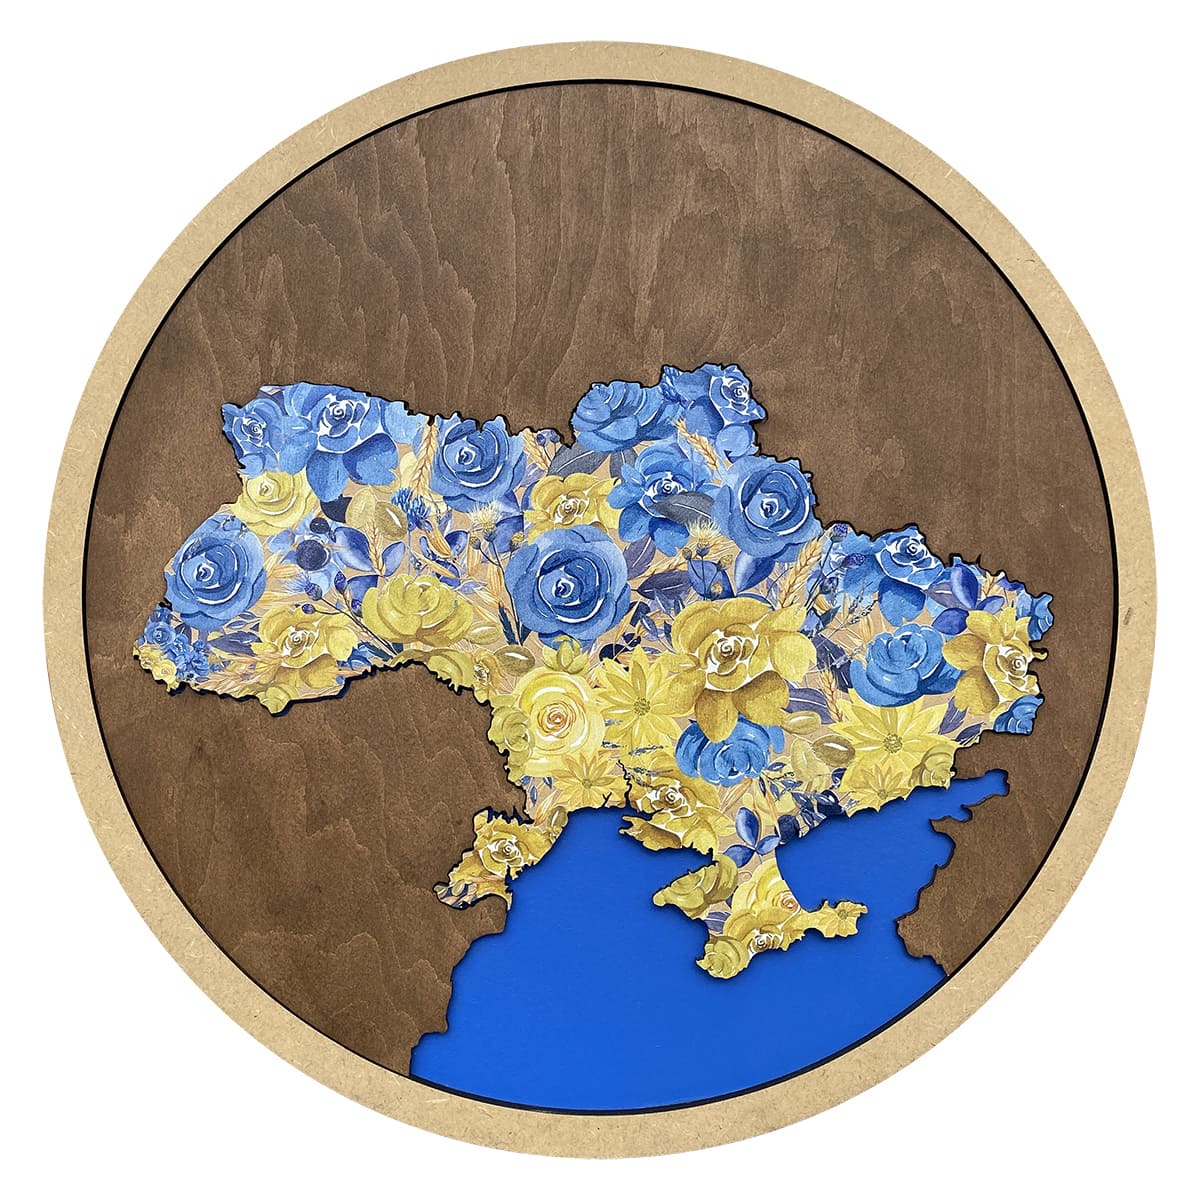 Дерев'яна карта України (кругла одношарова) з малюнком квітів - Gisolo